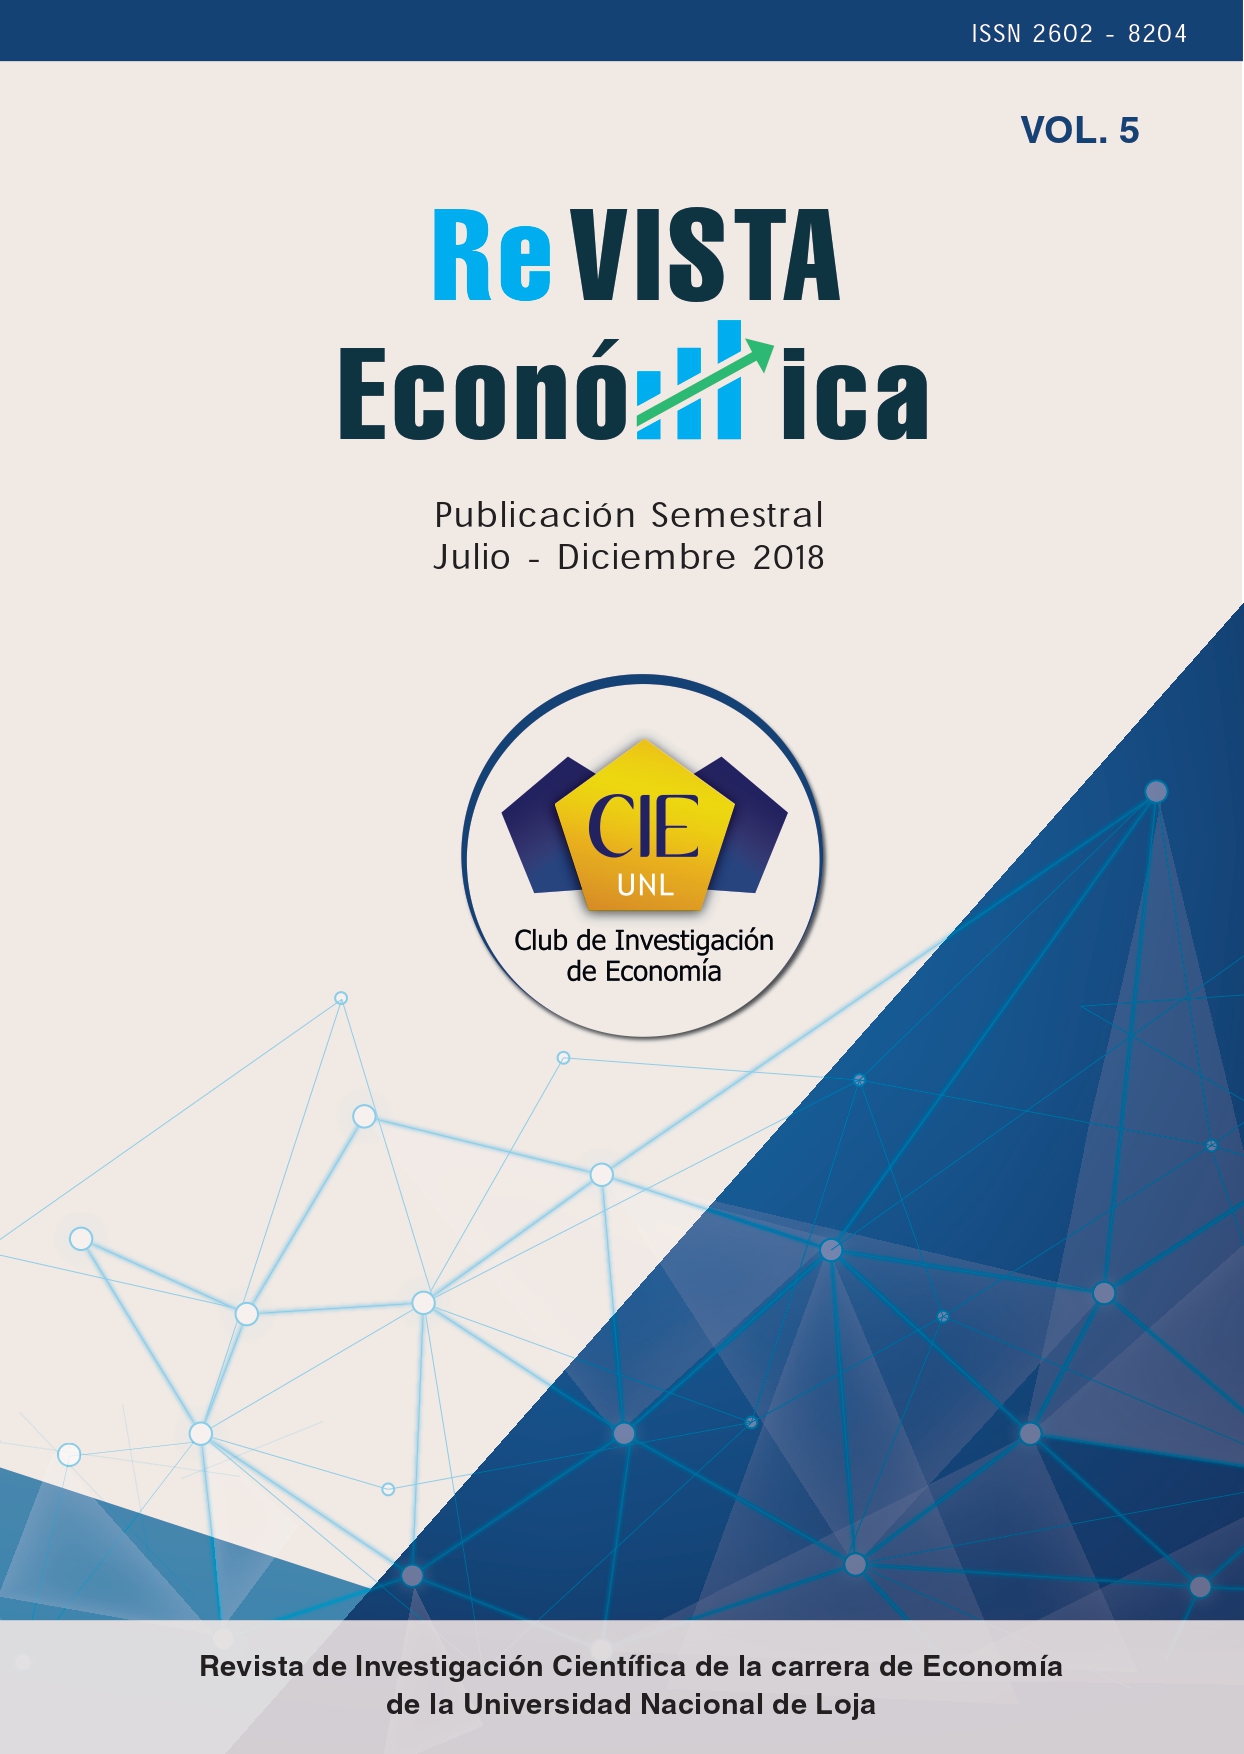 					Ver Vol. 5 Núm. 1 (2018): Revista Económica vol 5 (Julio-Diciembre 2018)
				